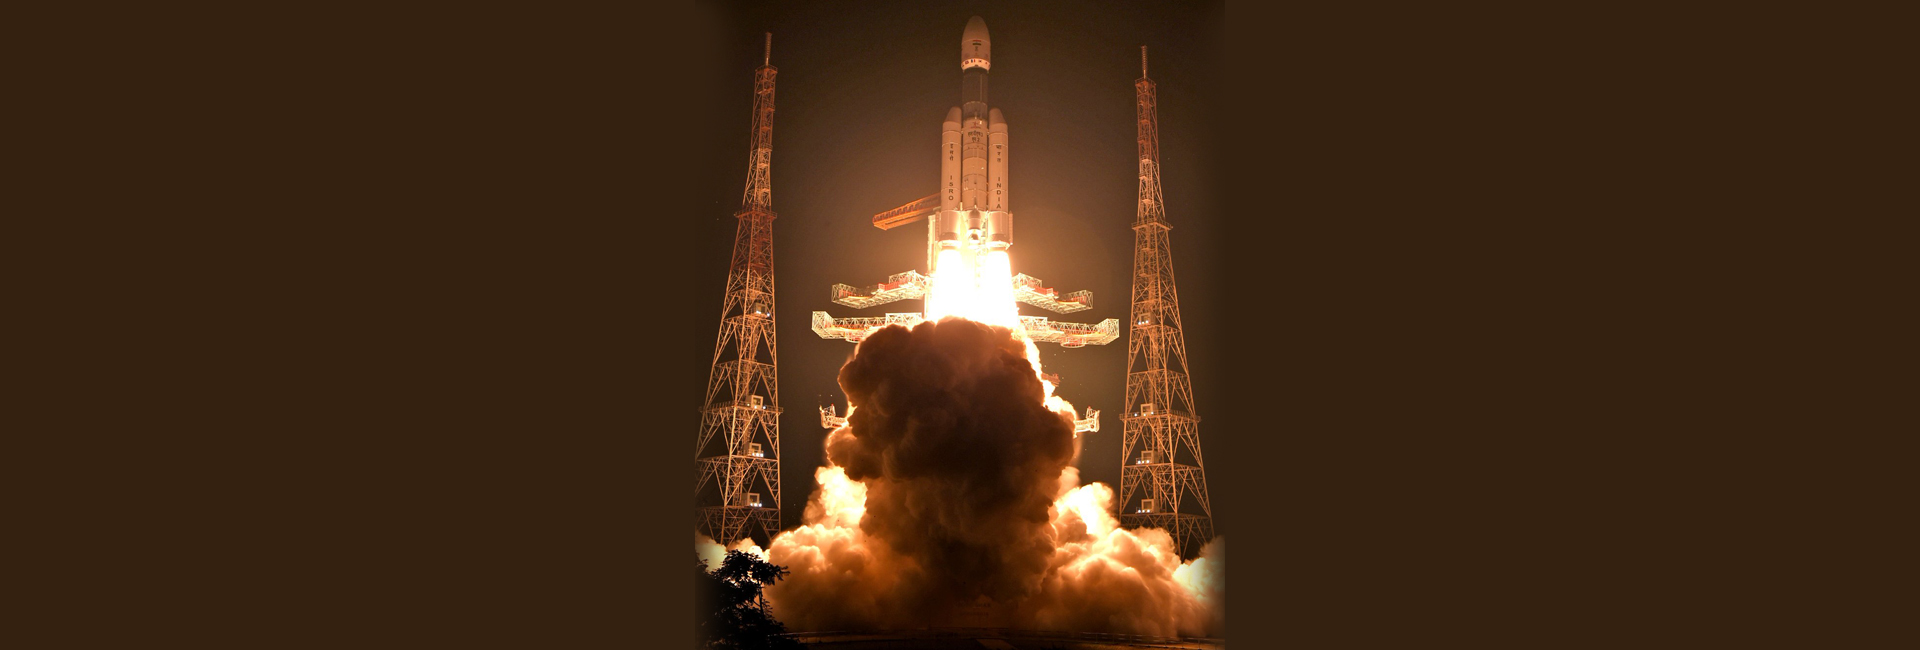 ISRO သည် LVM36 M3 မှတဆင့် ဂြိုလ်တု ၃၆ လုံးကို ပစ်လွှတ်သည်။